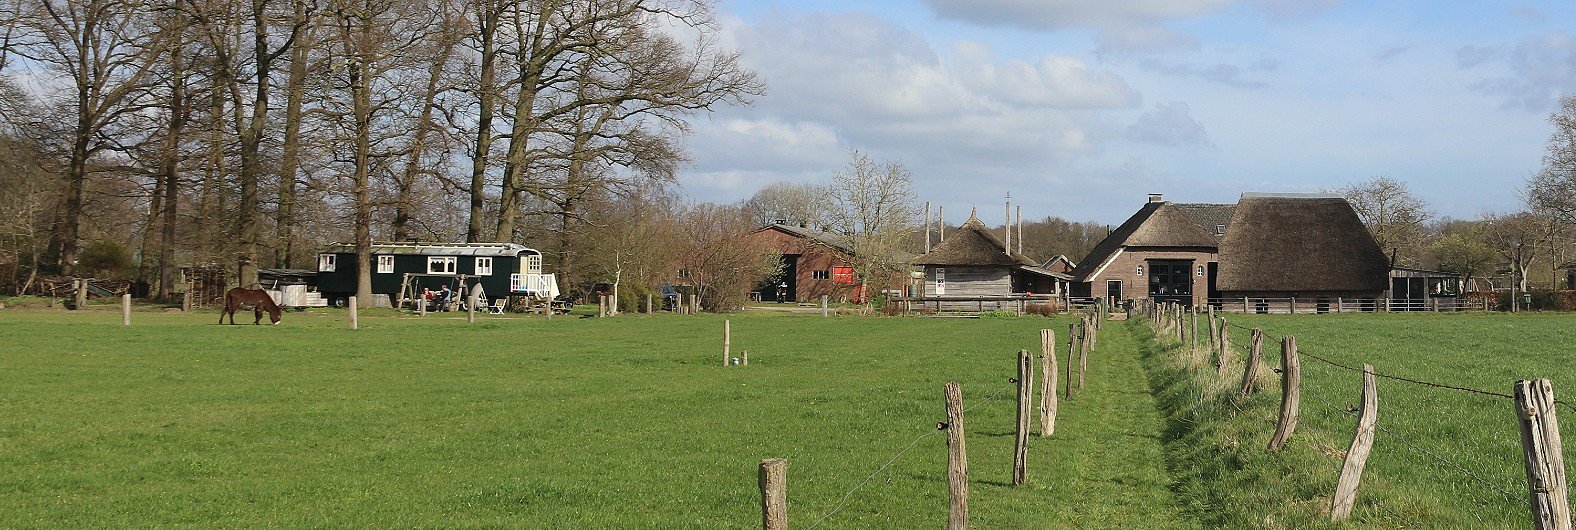 Zicht op Boerderij De Kleine Wildenberg vanaf de kampvuurplaats in het weiland. Links de Pipowagen en de ezelweide.